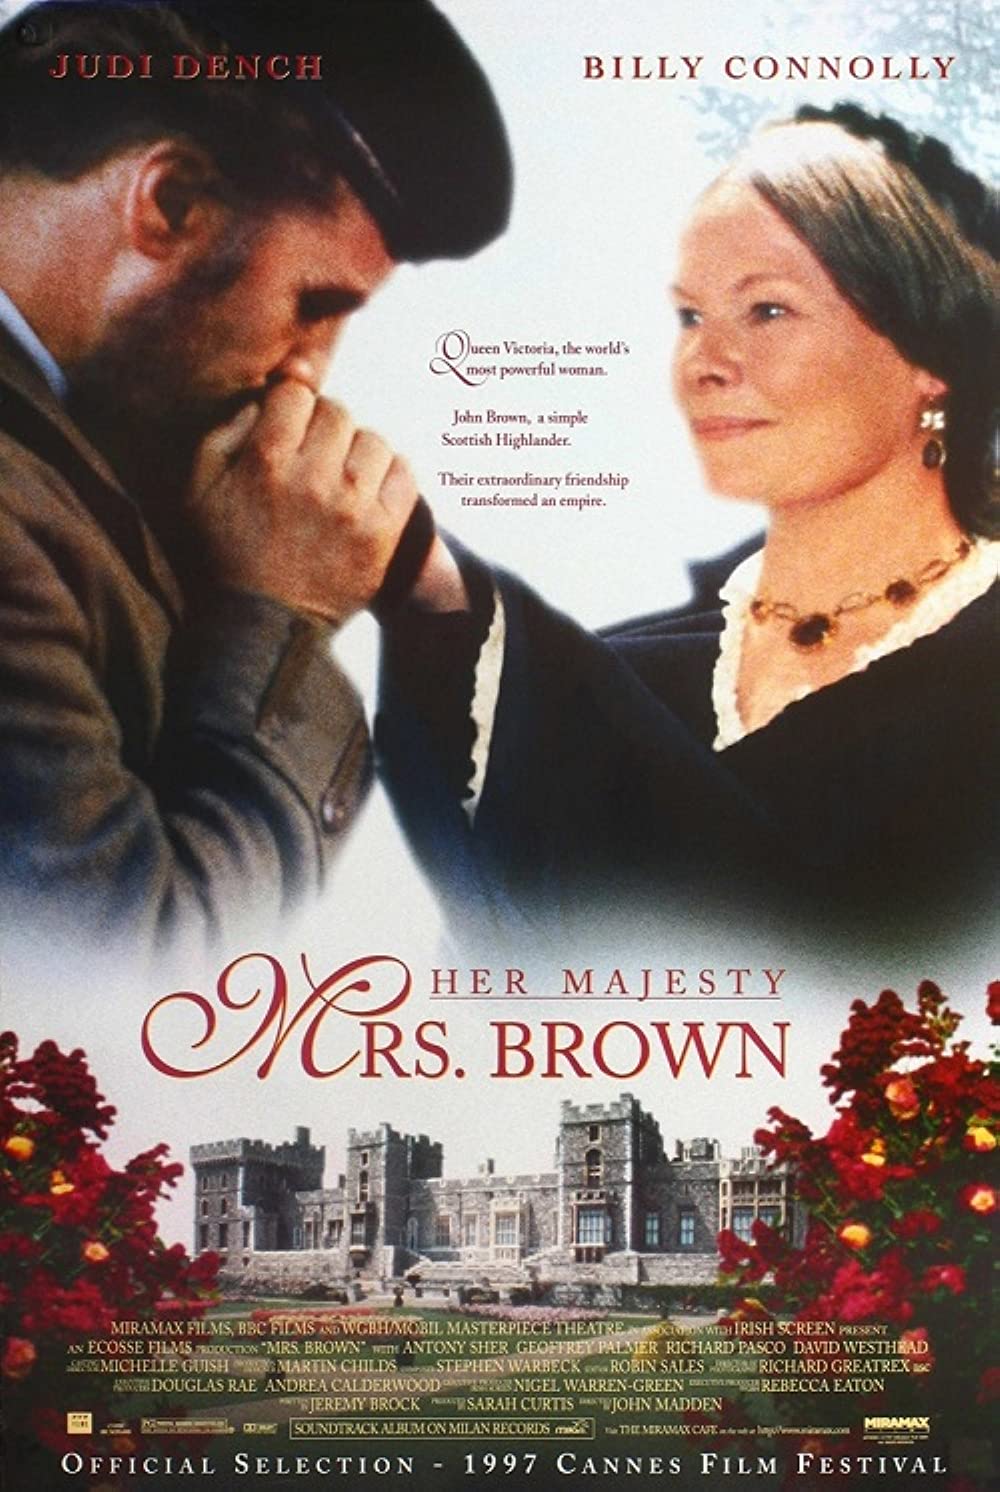 Filmbeschreibung zu Ihre Majestät Mrs. Brown